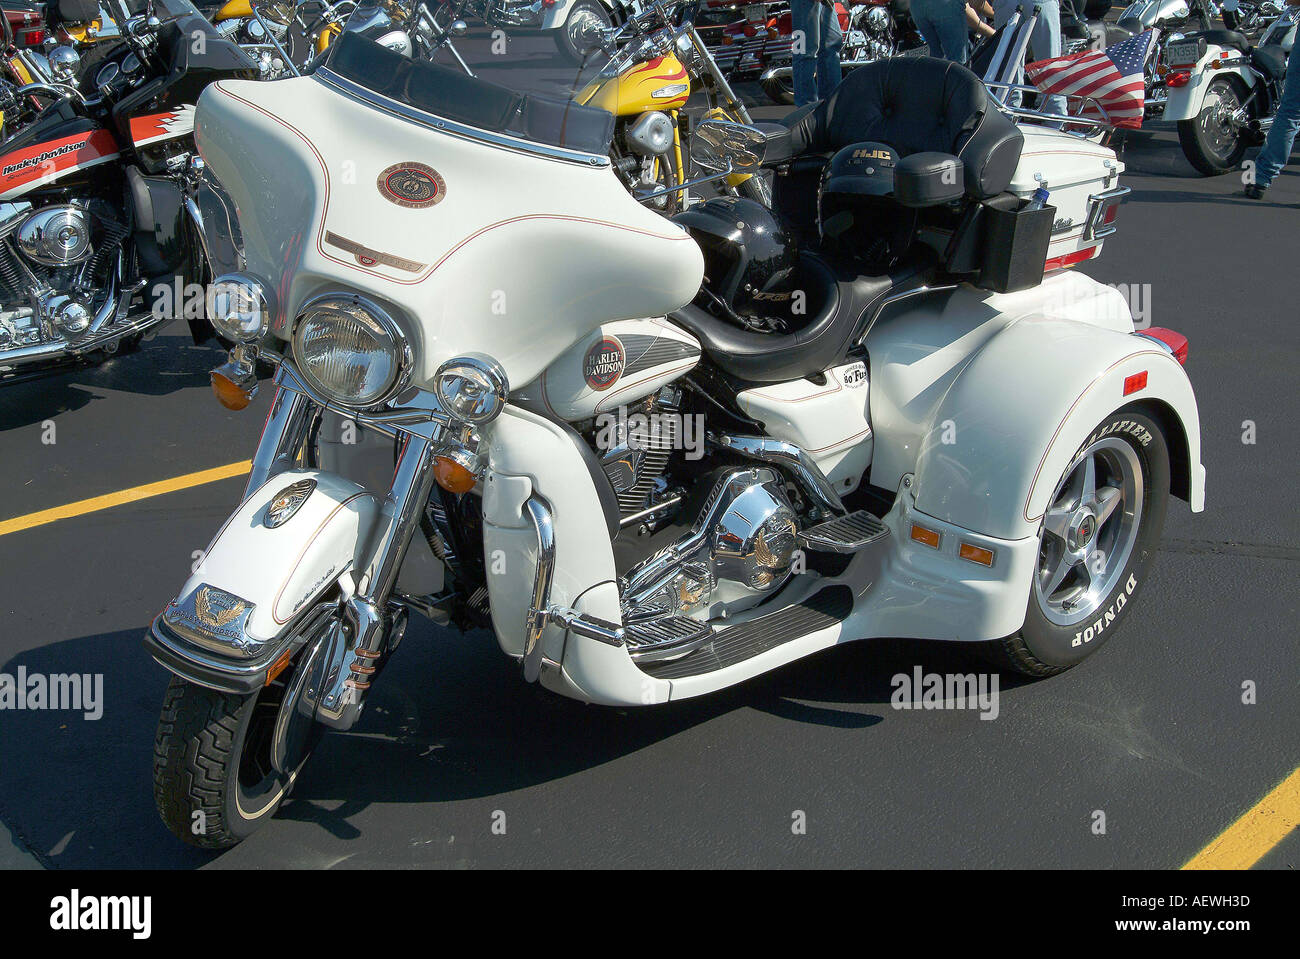 Eine weiße Harley Davidson drei-Rad-Motorrad Stockfotografie - Alamy